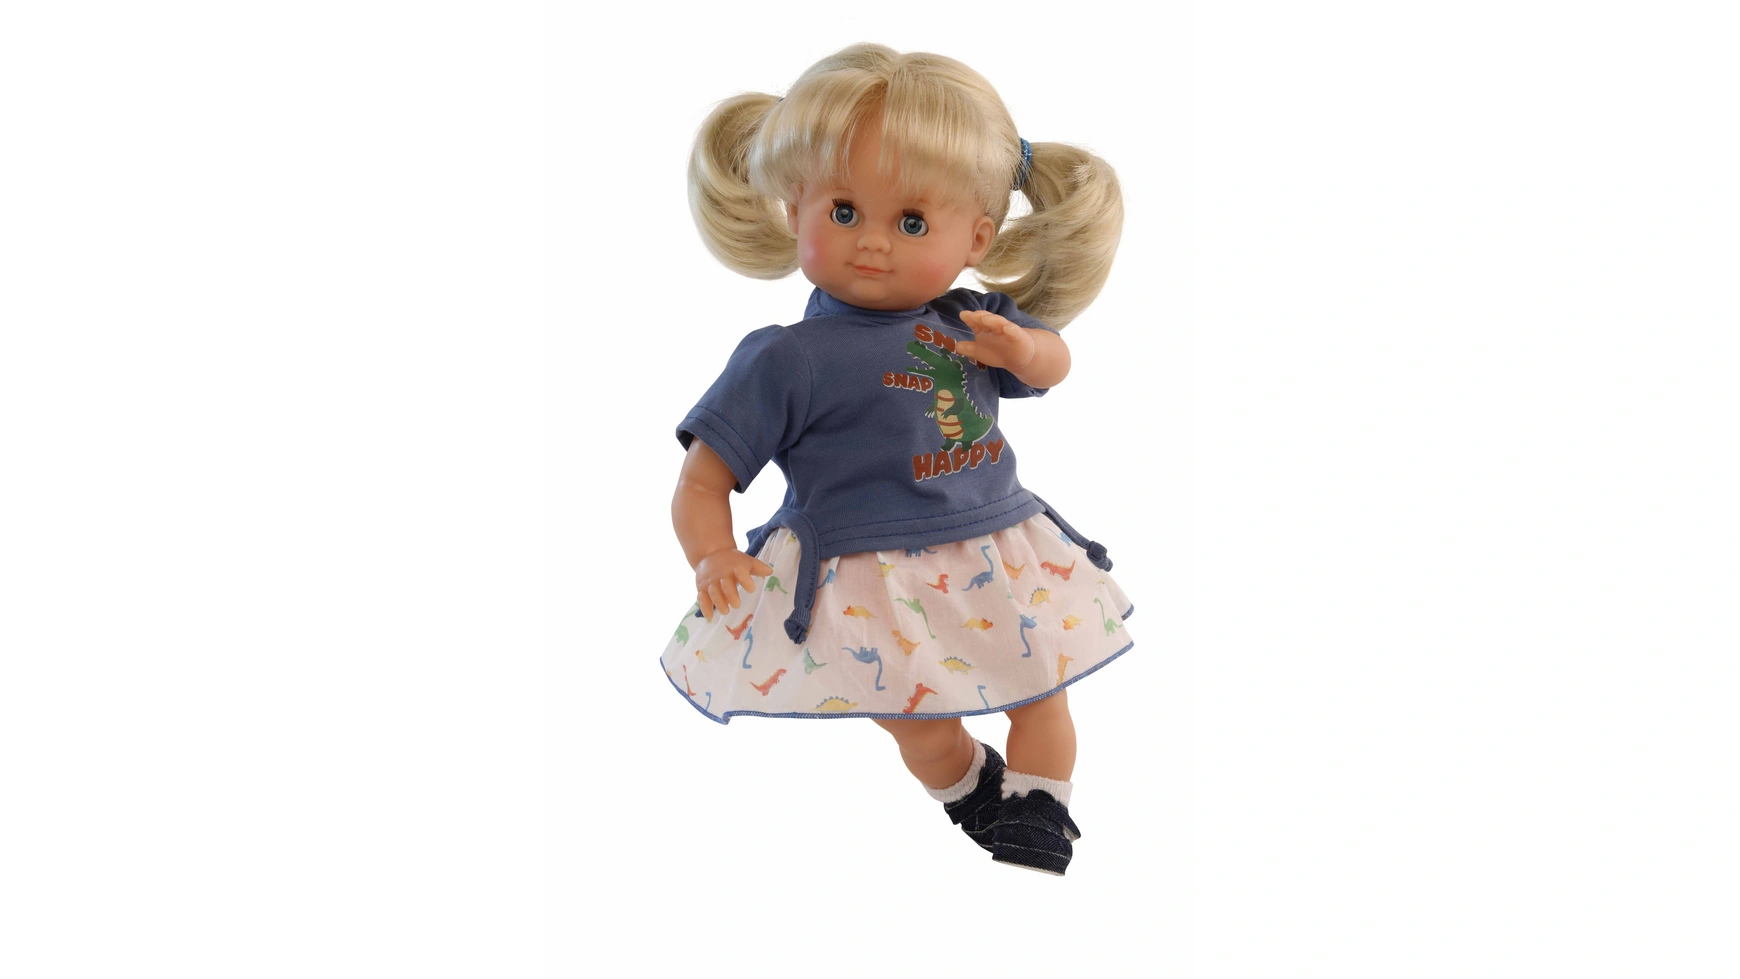 Schildkroet-Puppen Кукла Шлюммерле 32 см светлые волосы, голубые сонные глаза, летняя одежда Дино